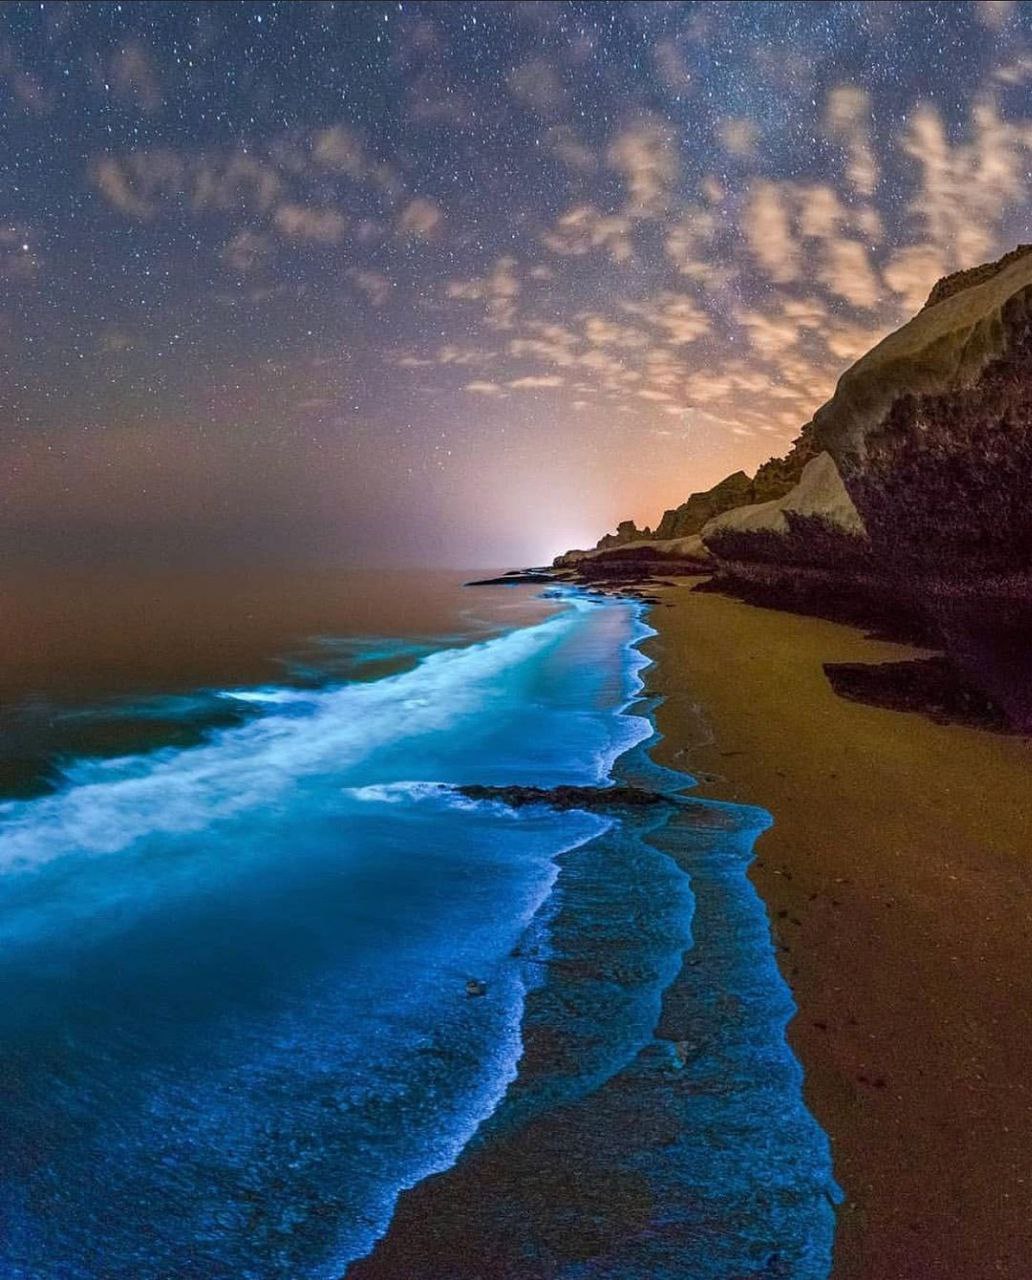 نمایی زیبا از ساحل خلیج فارس + عکس - تلگرام آپ